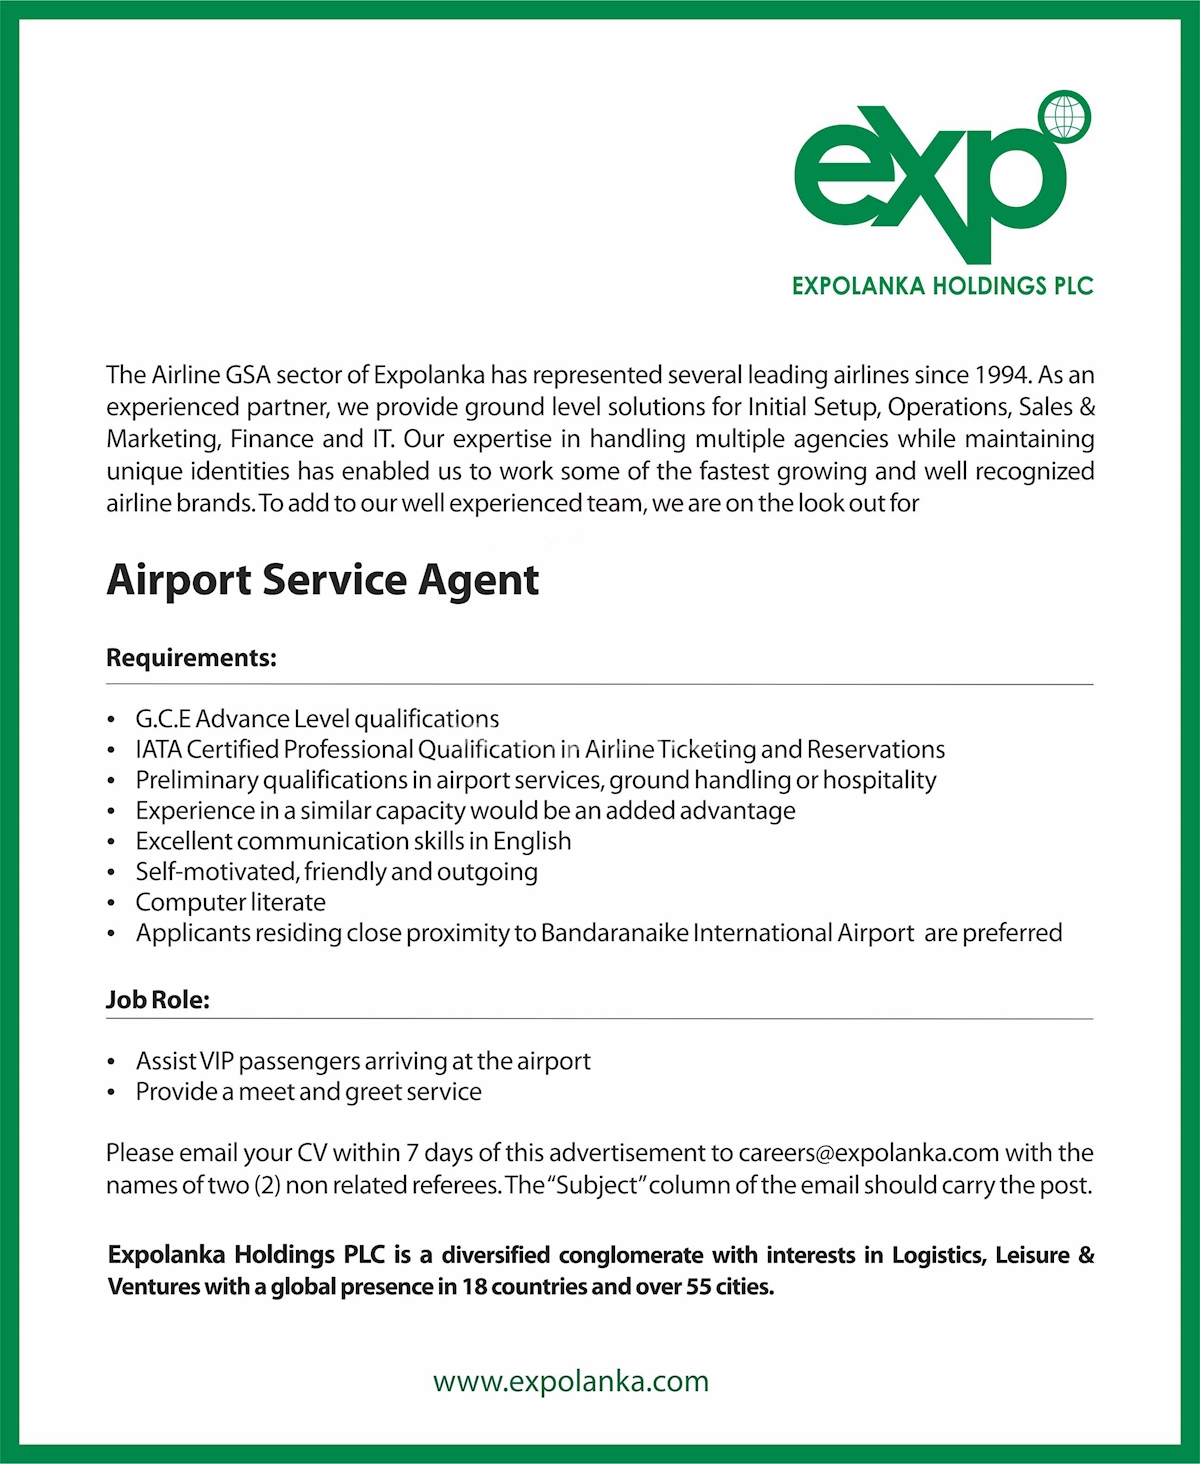 Airport service manager job description